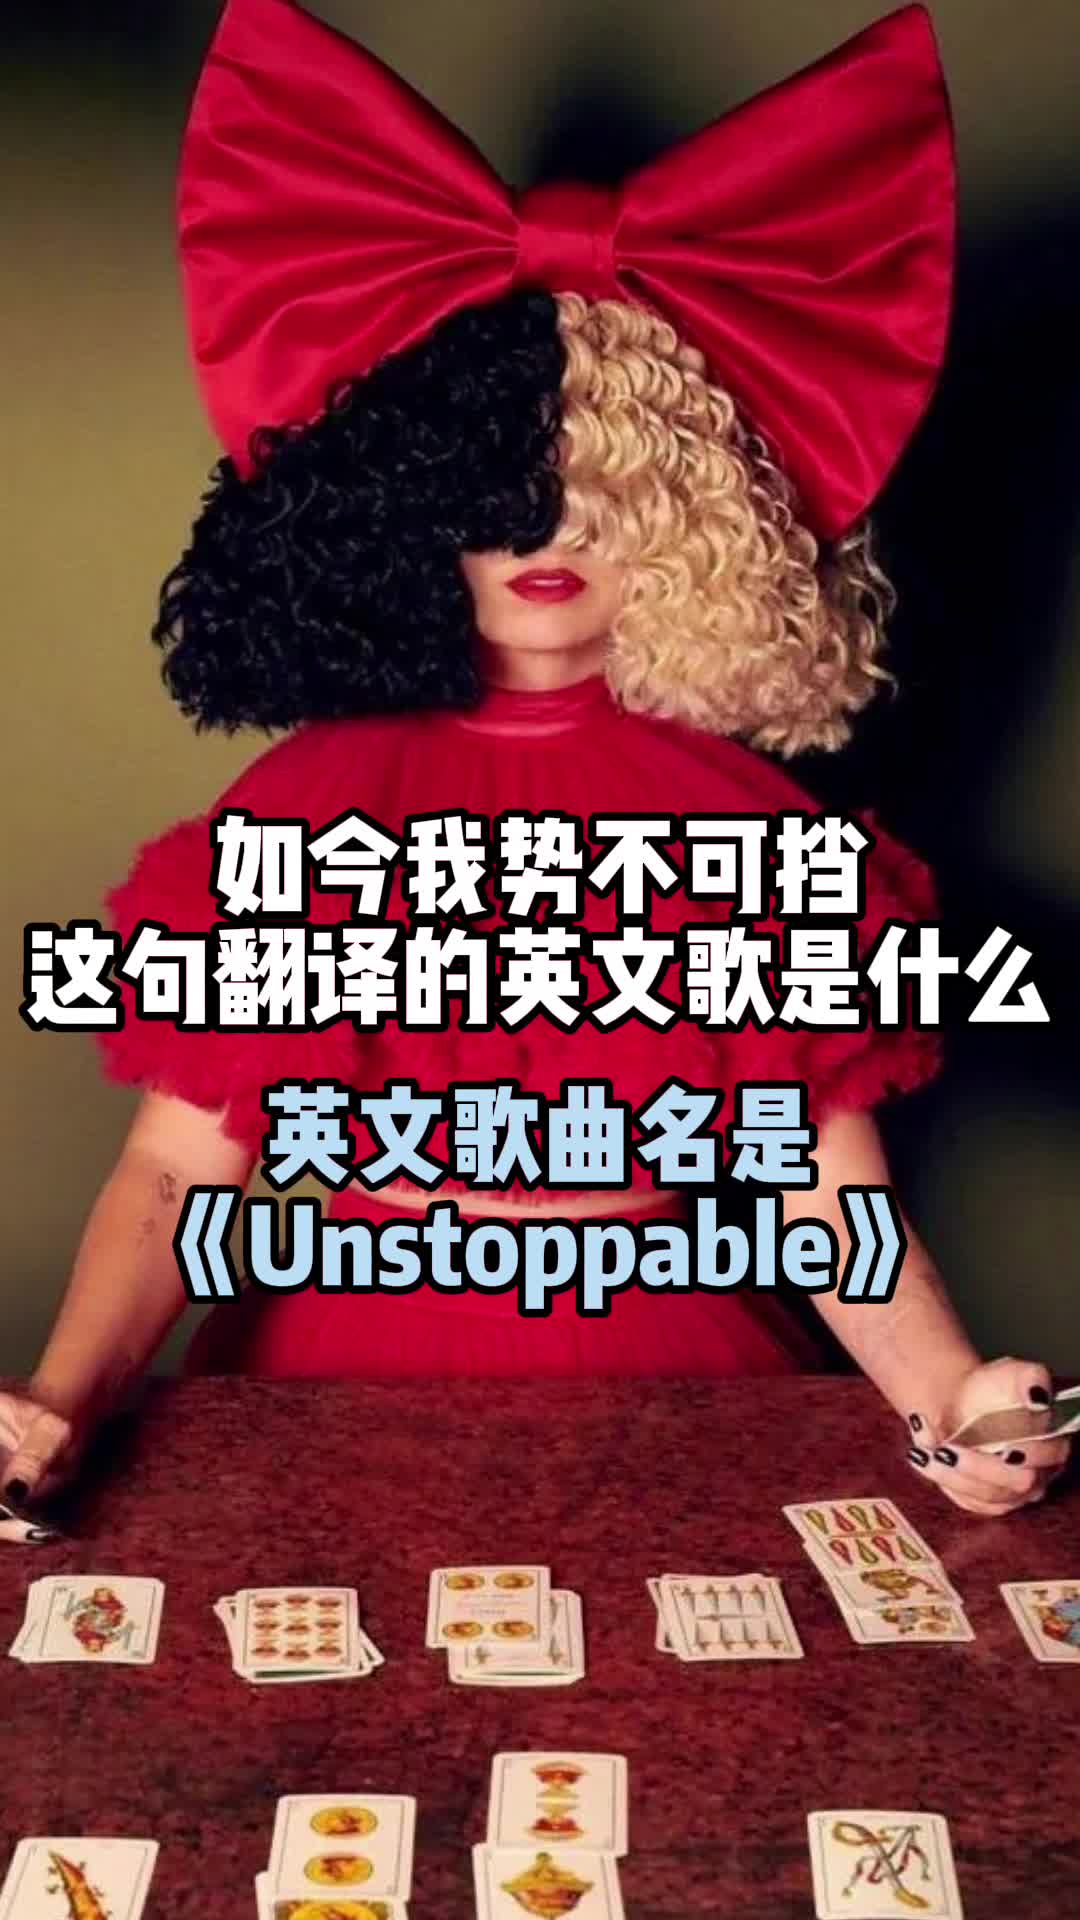 如今我势不可挡这句翻译的英文歌曲名是《unstoppable》,一起欣赏吧